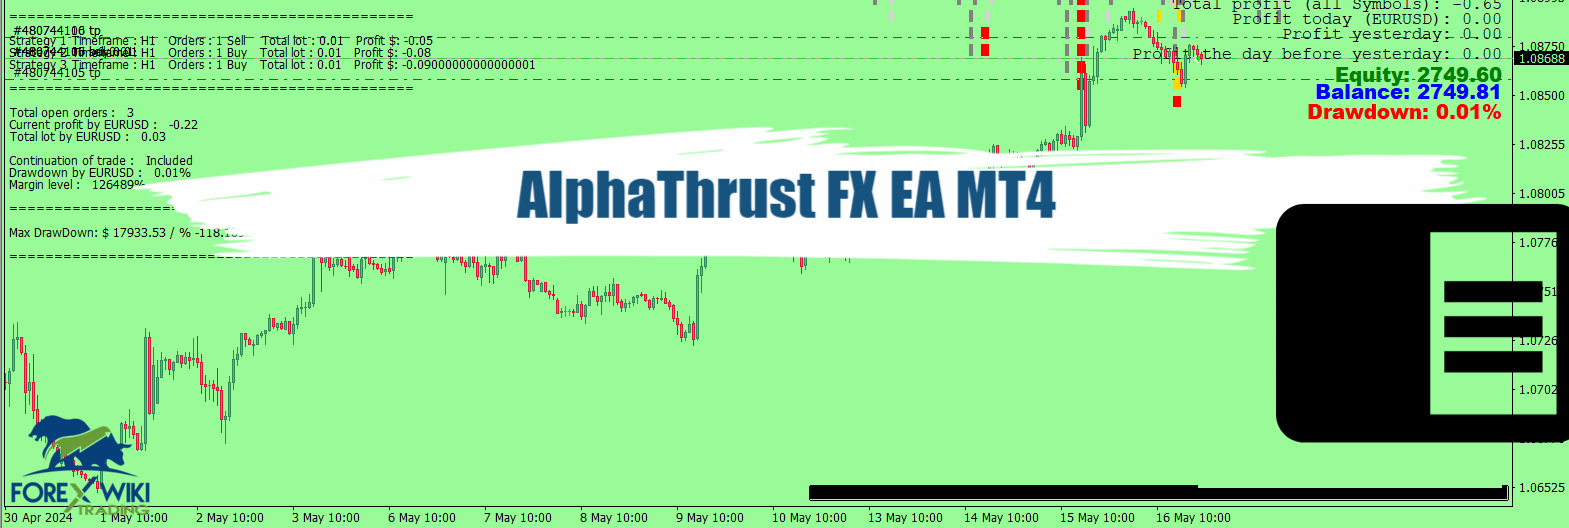 AlphaThrust FX EA MT4 - Free Download 22